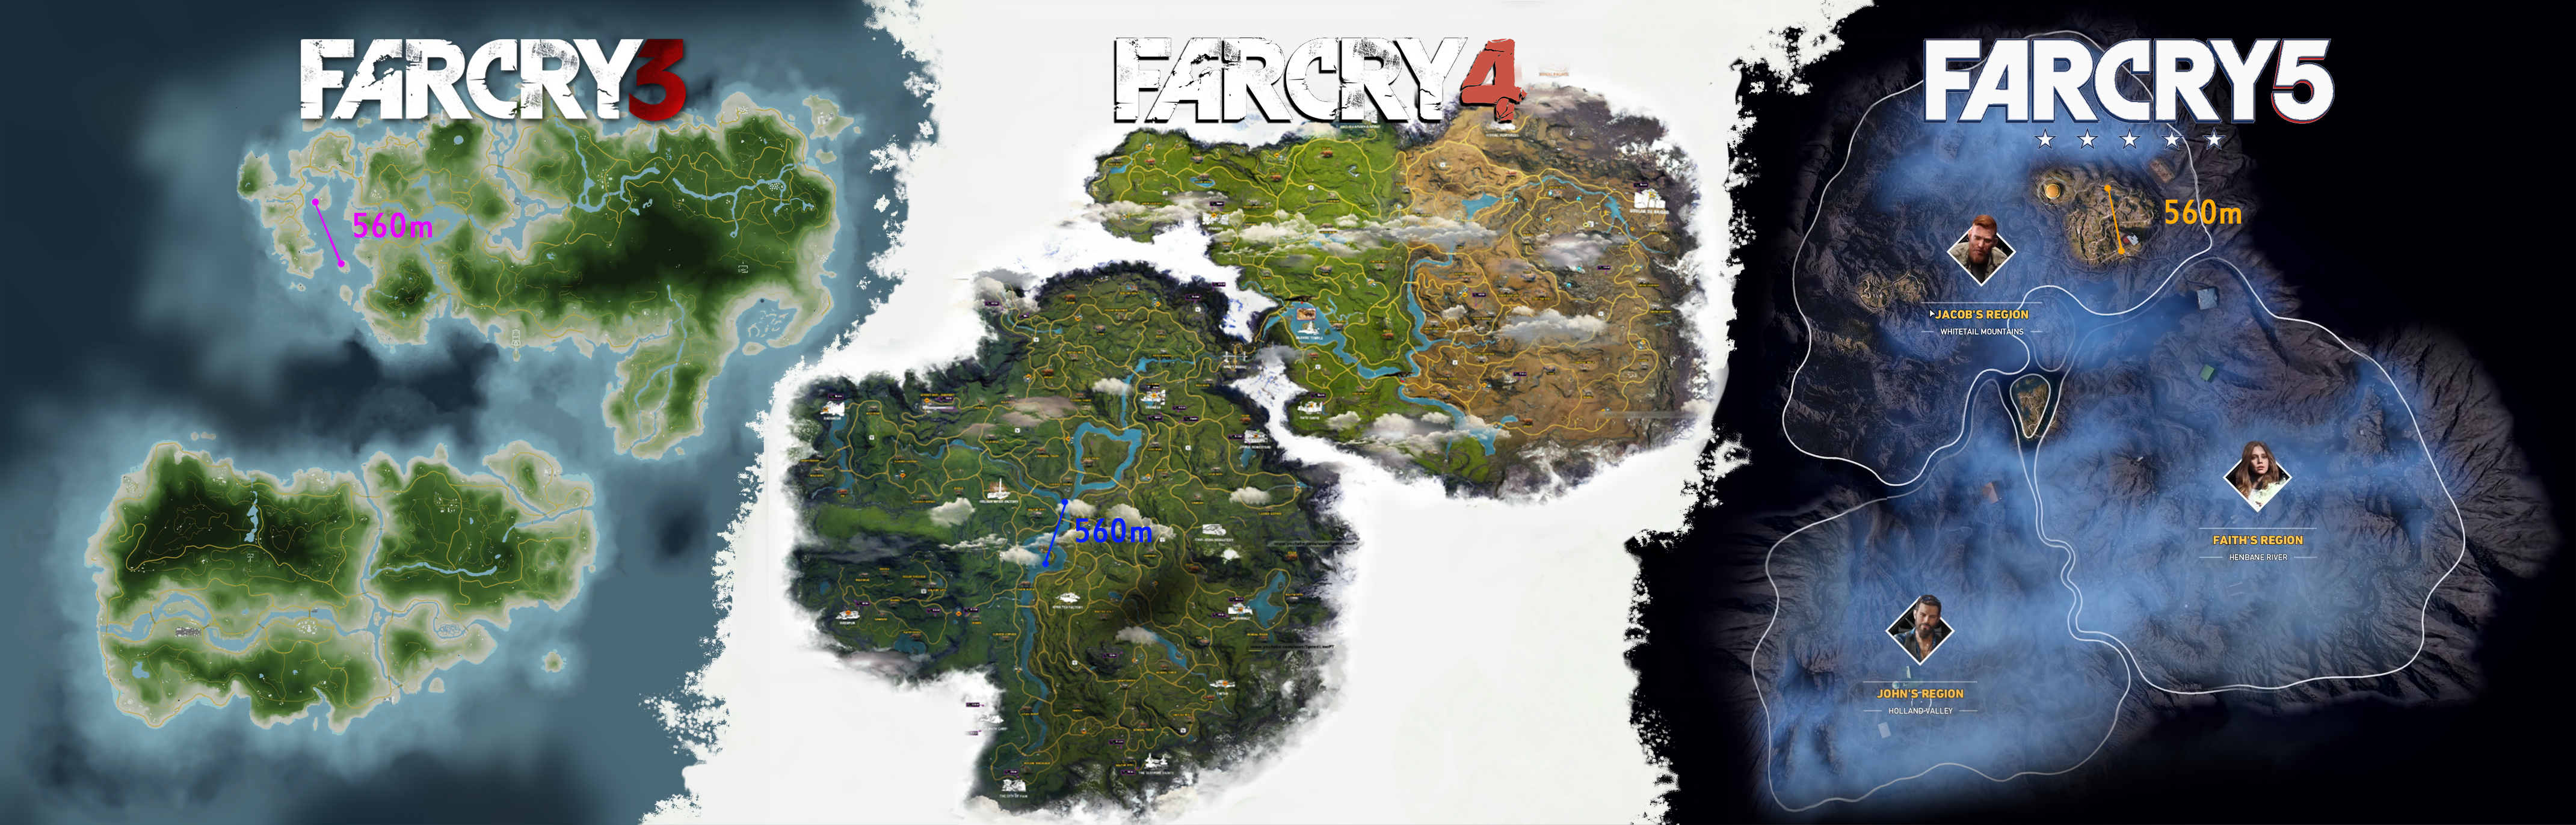 Far cry 4 escape maps